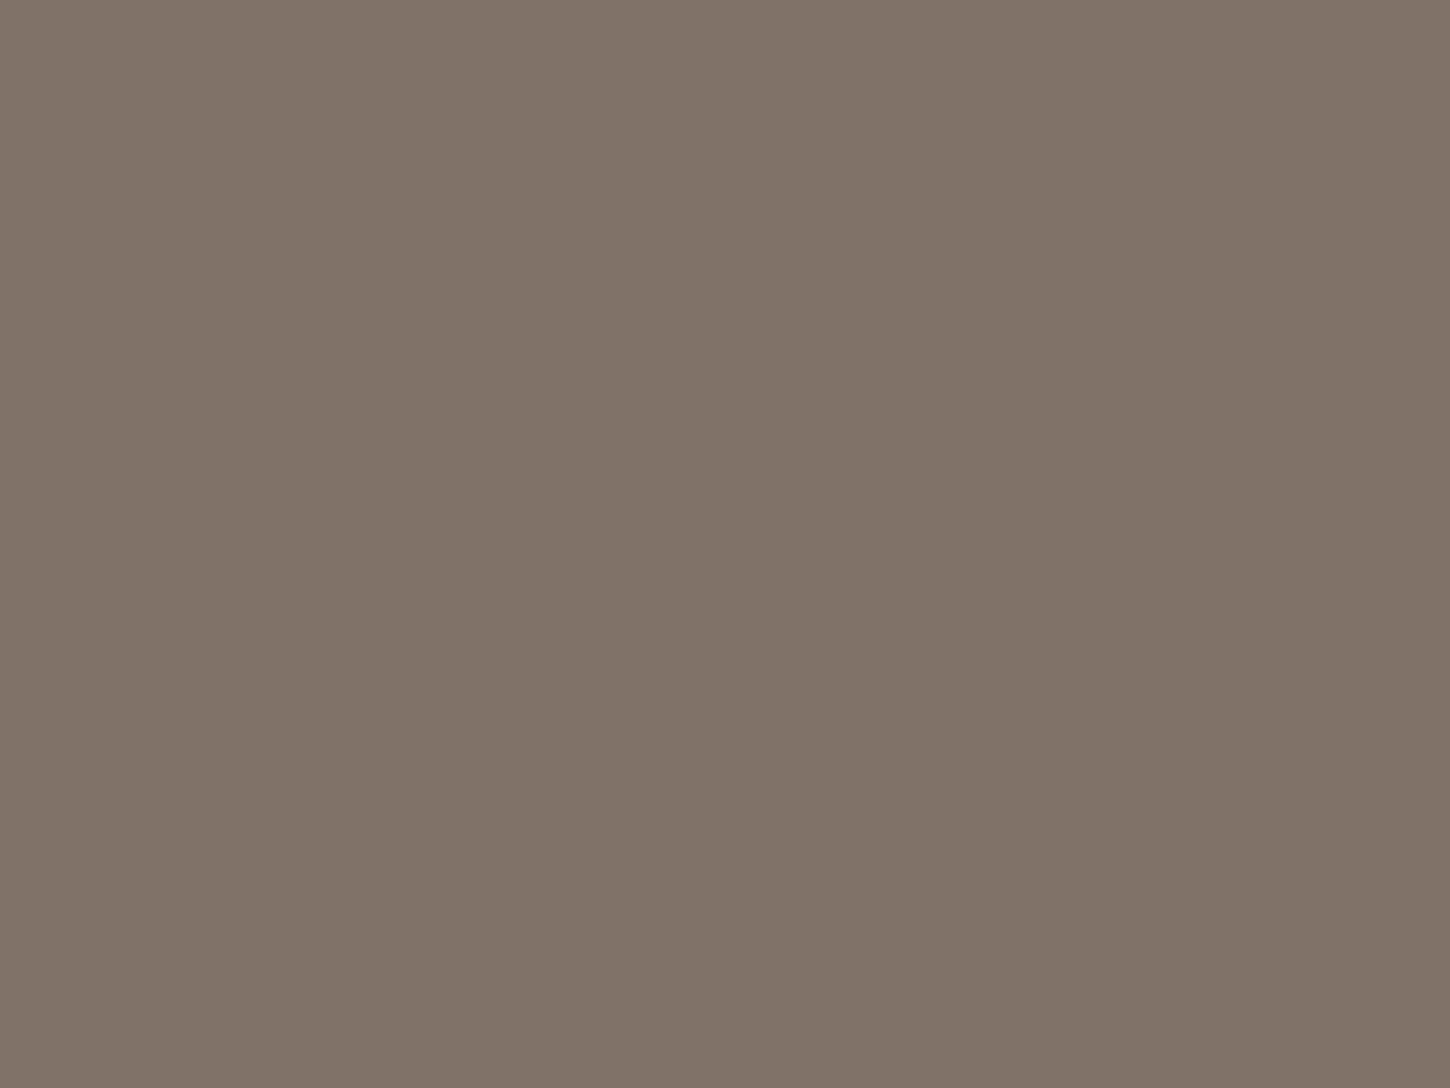 Иван Шишкин. Деревенский двор. 1860-е годы. Государственный Русский музей, Санкт-Петербург